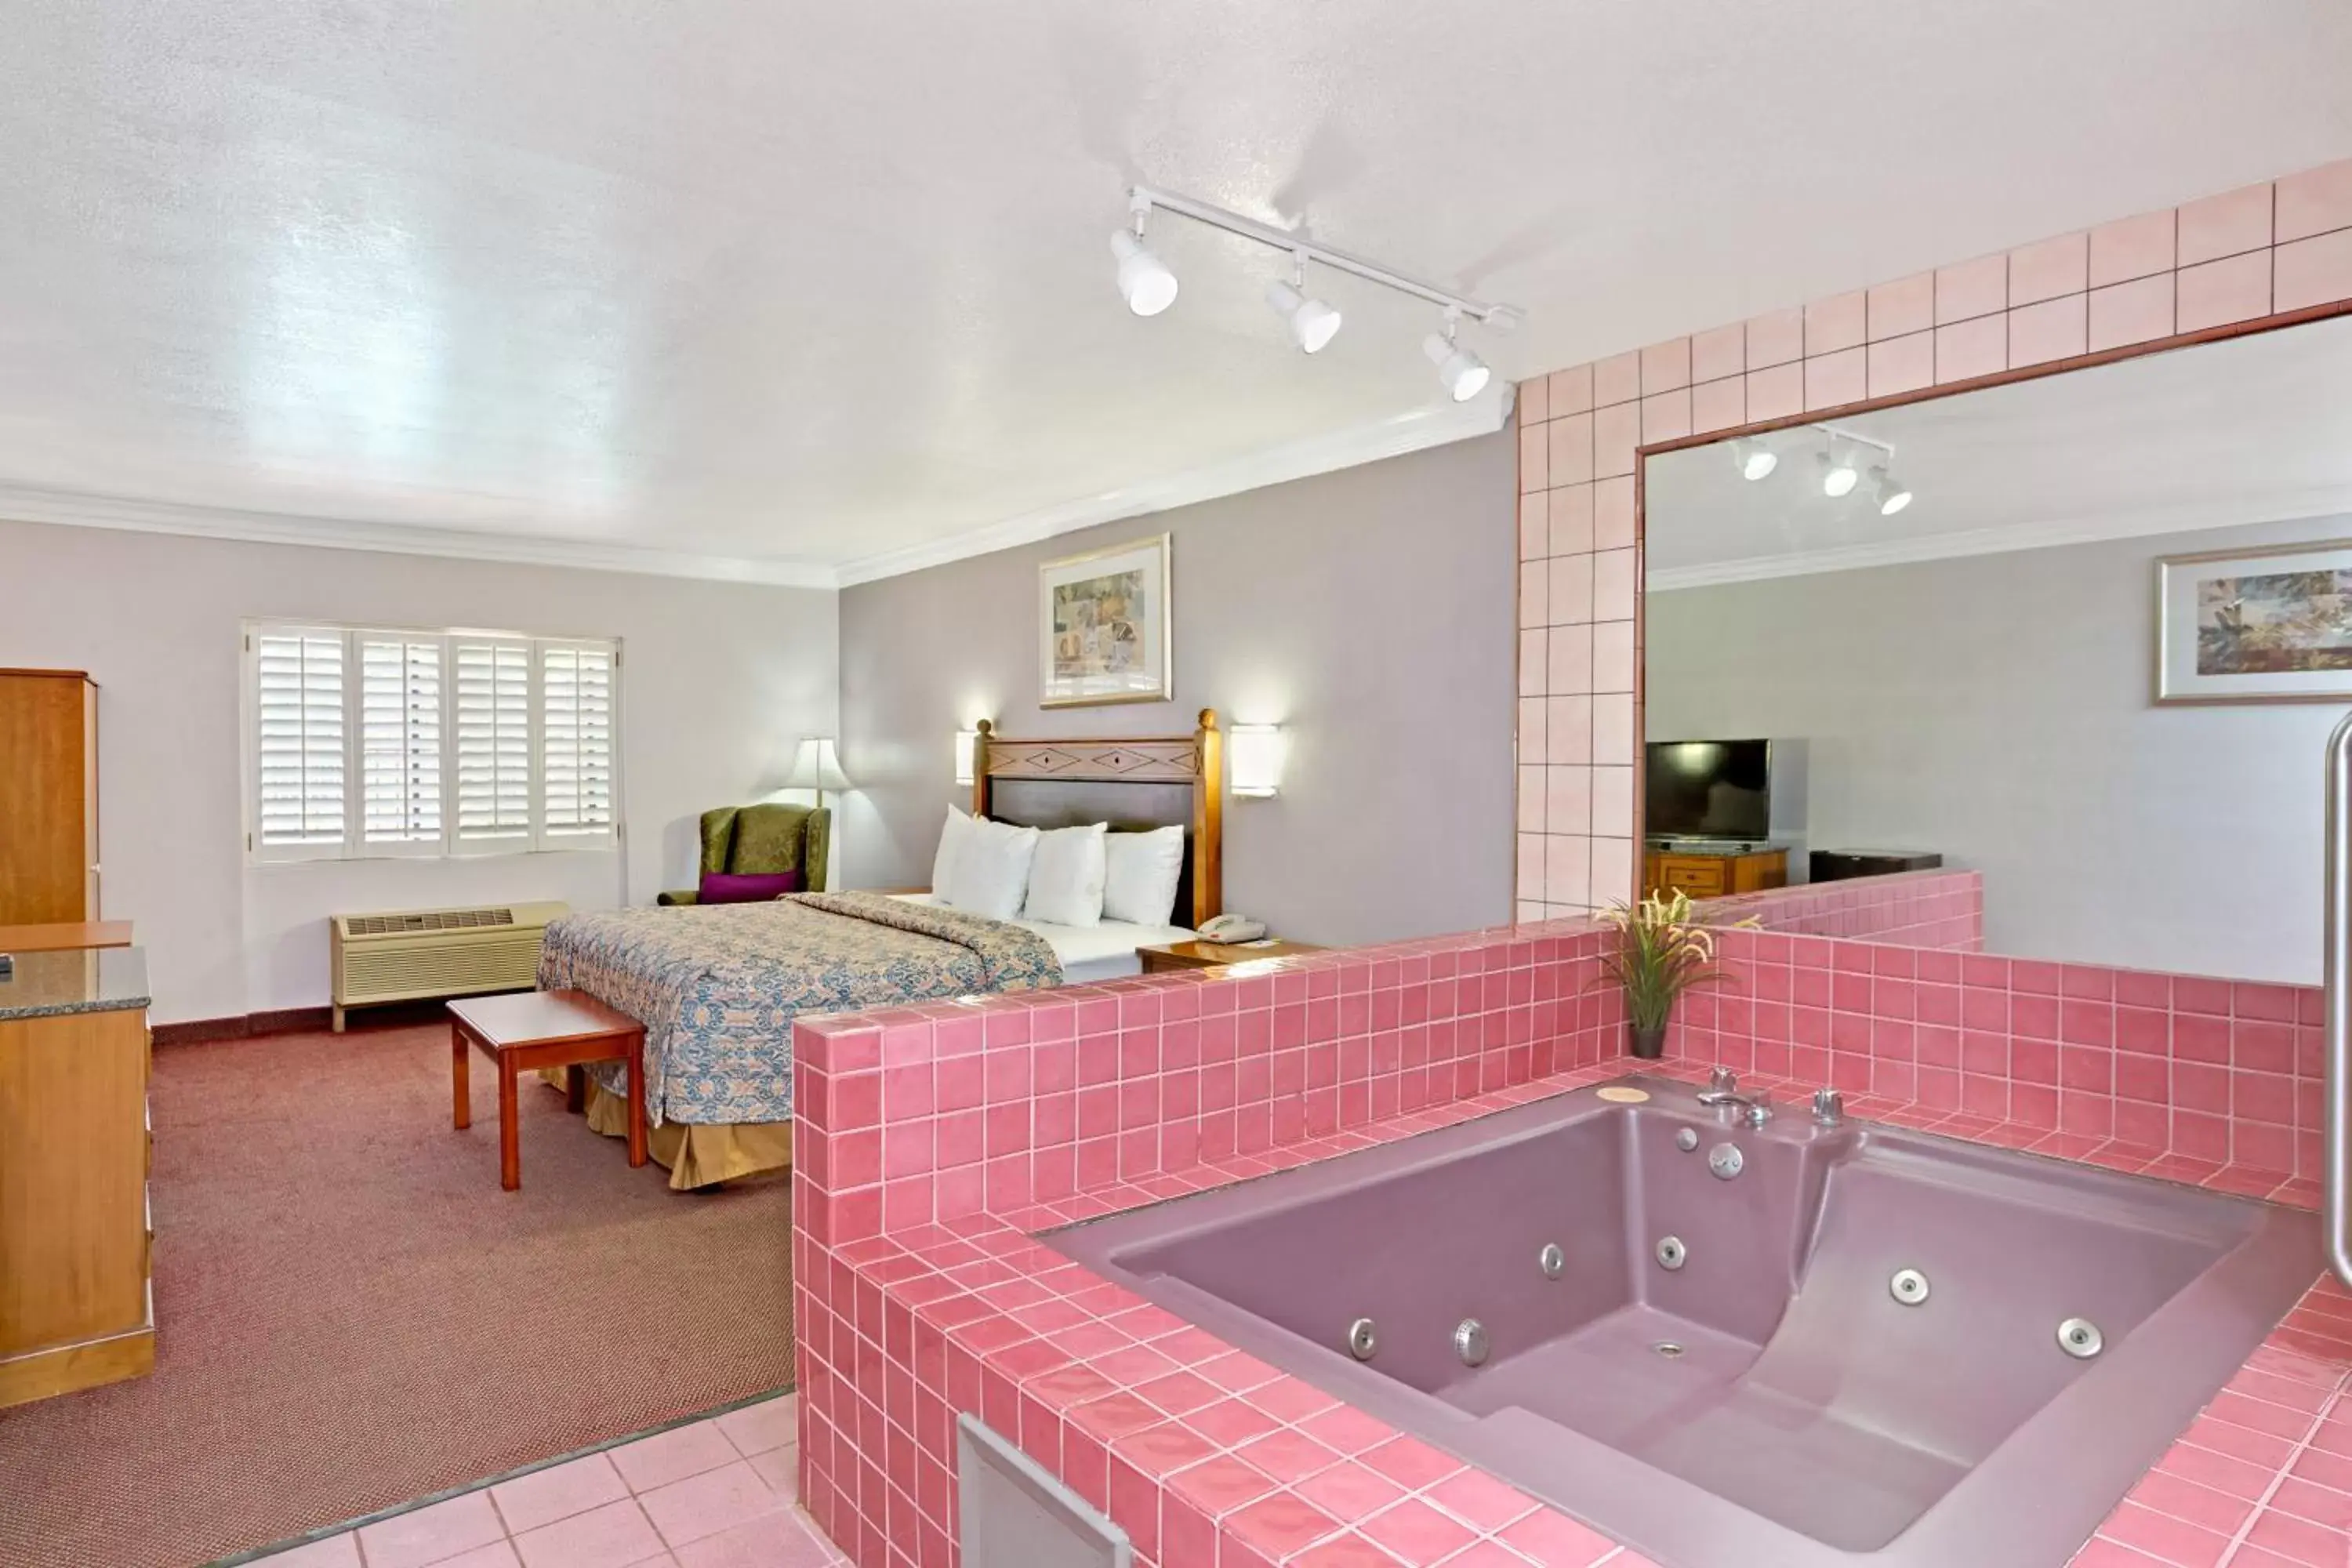 Hot Tub in Days Inn by Wyndham West Covina